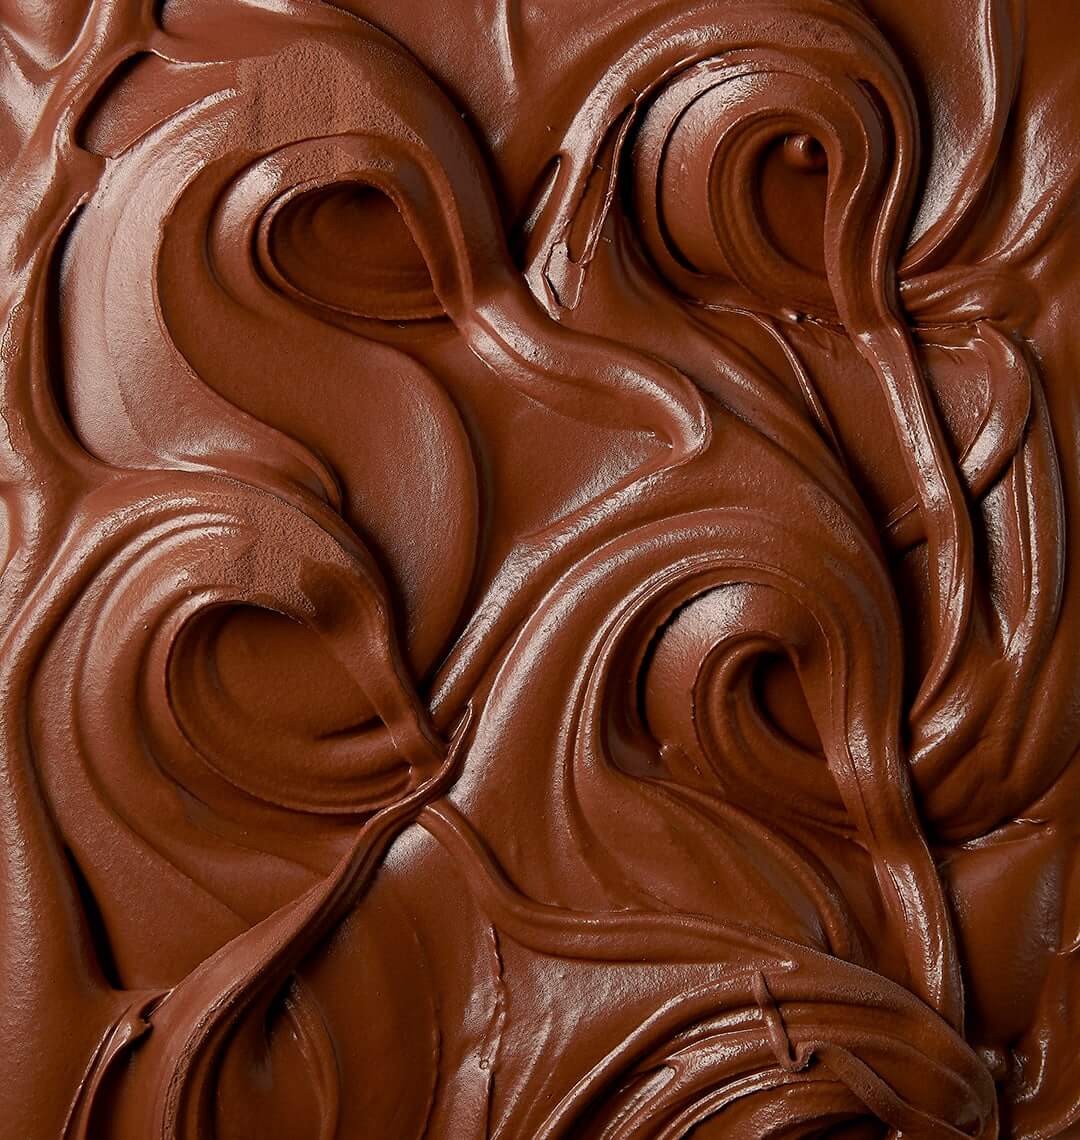 Menthe et copeaux de chocolat noir – Amorino